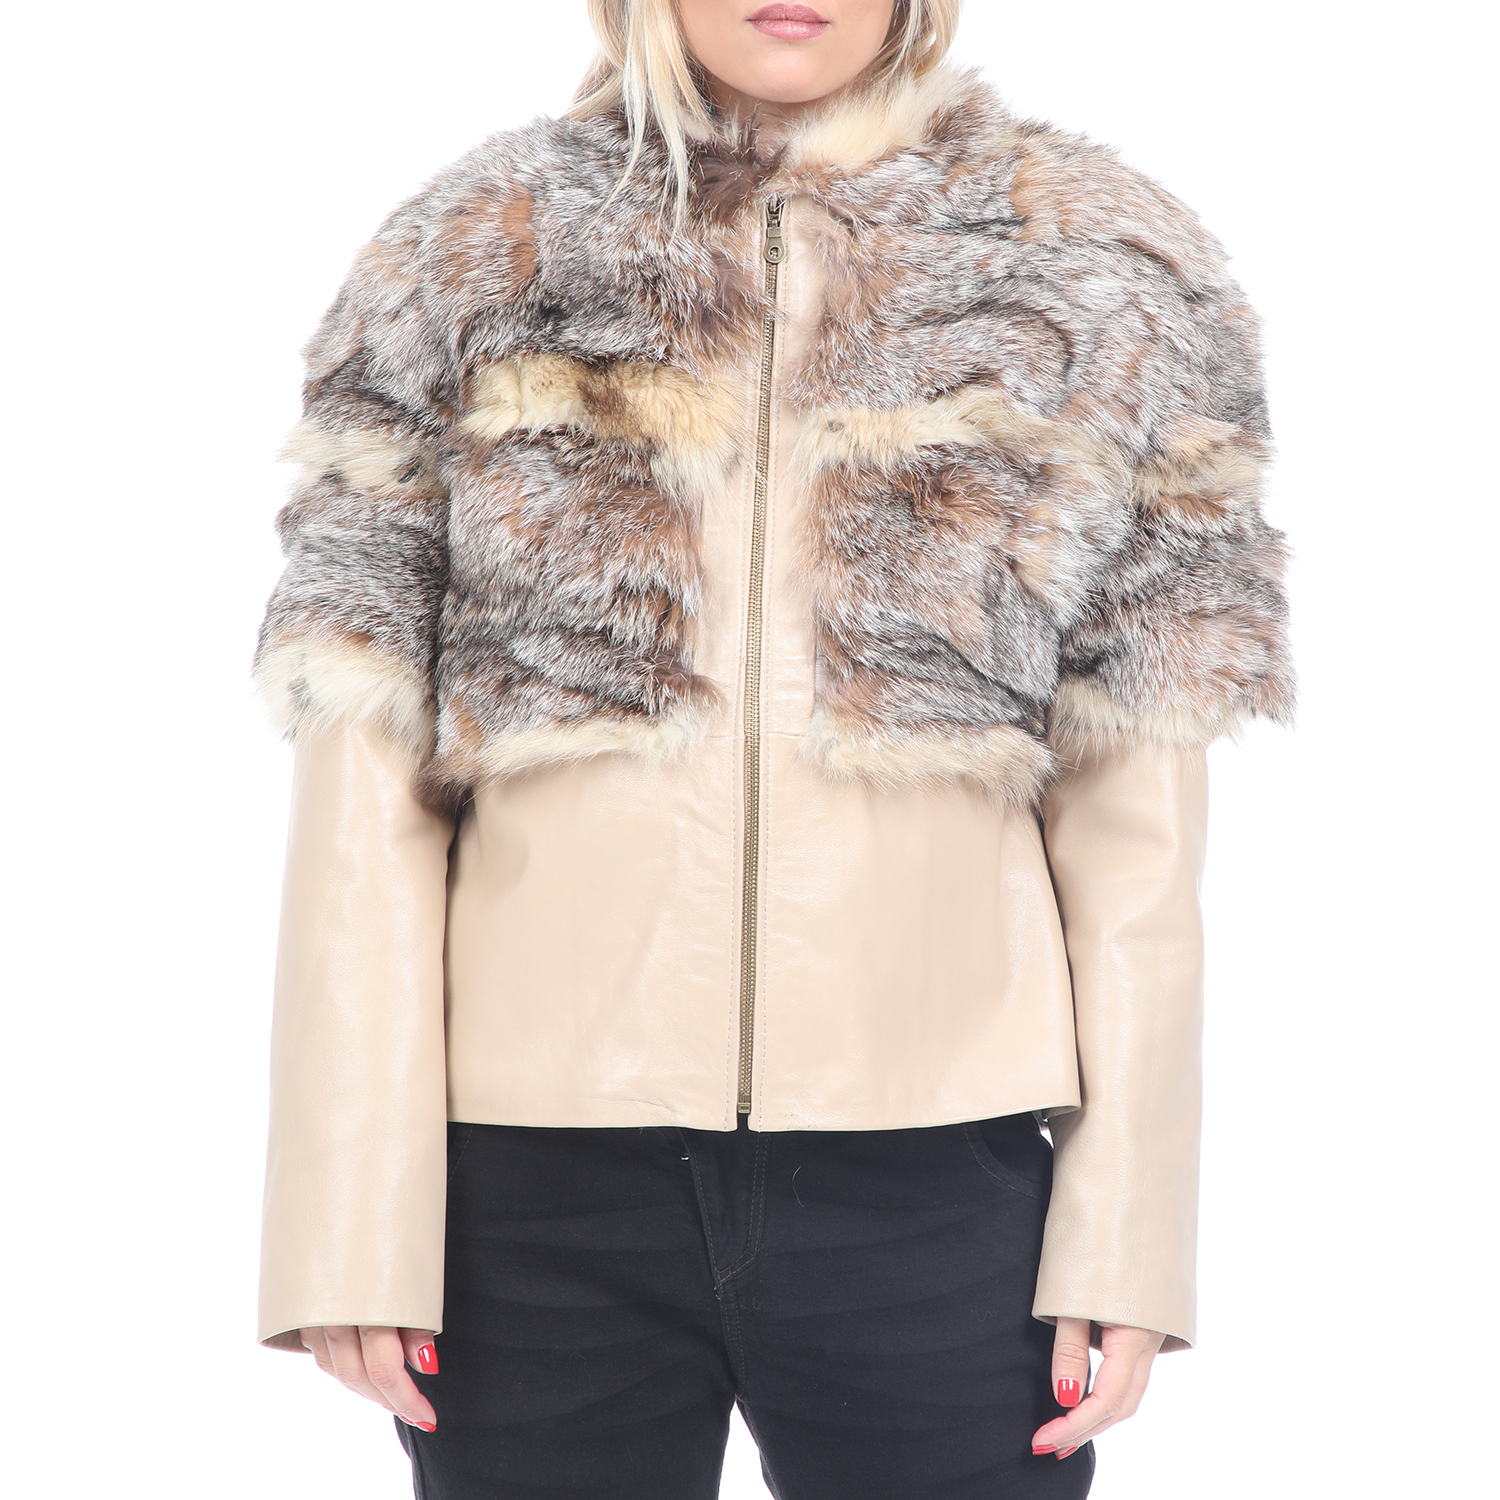 RITSELFURS – Γυναικείο δερμάτινο jacket RITSELFURS FOX μπεζ